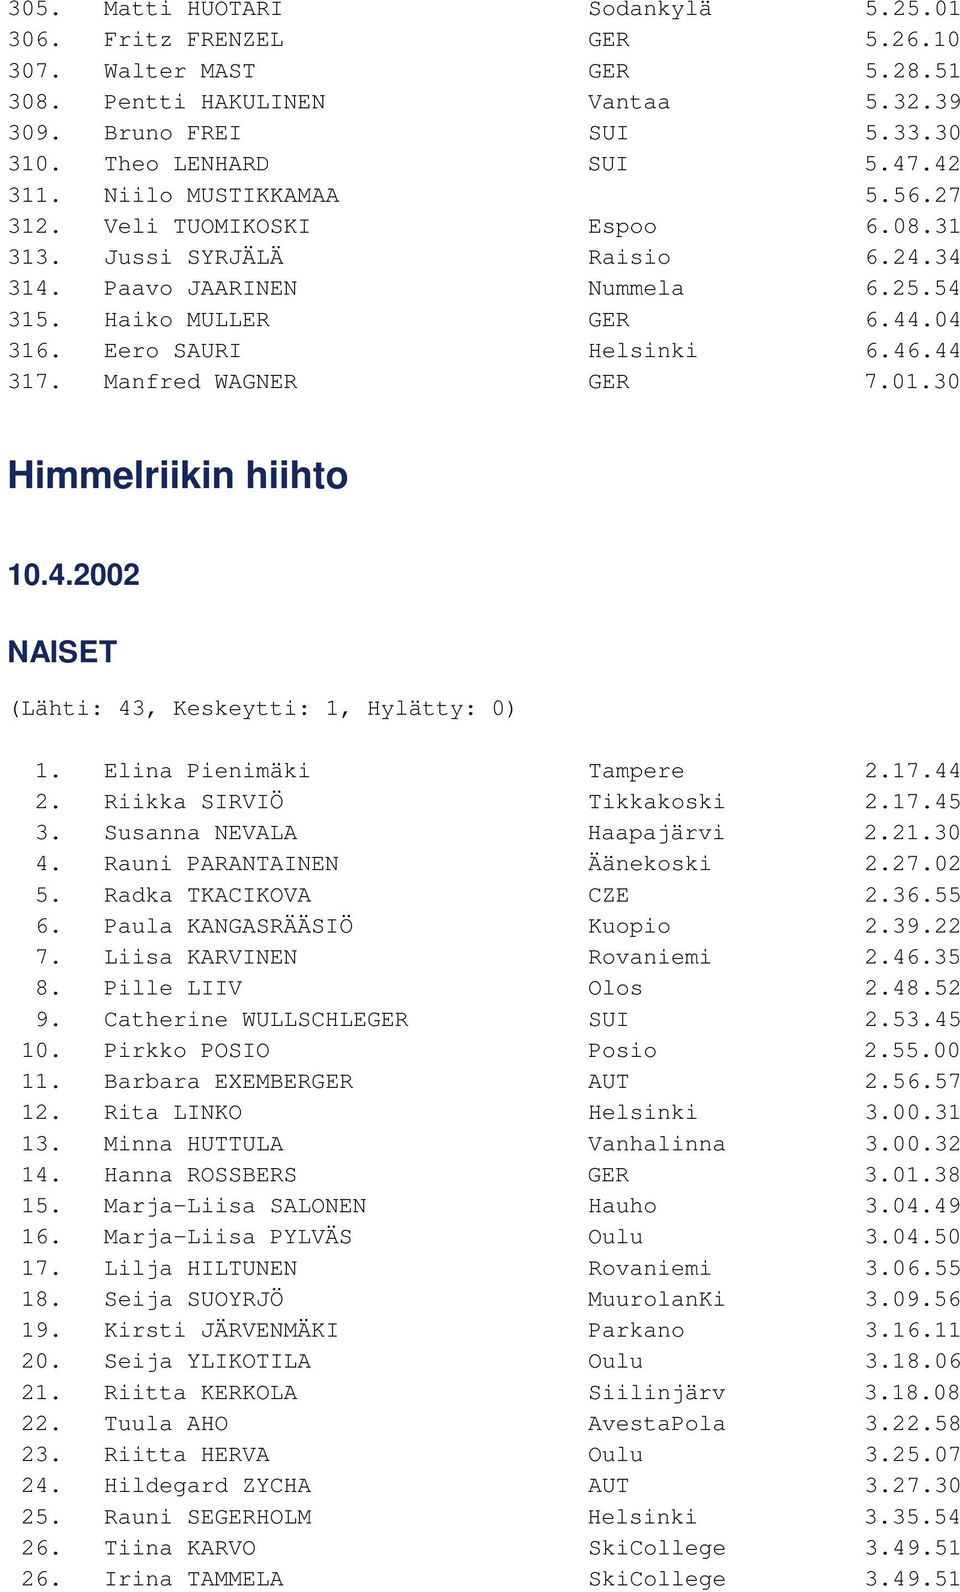 Manfred WAGNER GER 7.01.30 Himmelriikin hiihto 10.4.2002 NAISET (Lähti: 43, Keskeytti: 1, Hylätty: 0) 1. Elina Pienimäki Tampere 2.17.44 2. Riikka SIRVIÖ Tikkakoski 2.17.45 3.